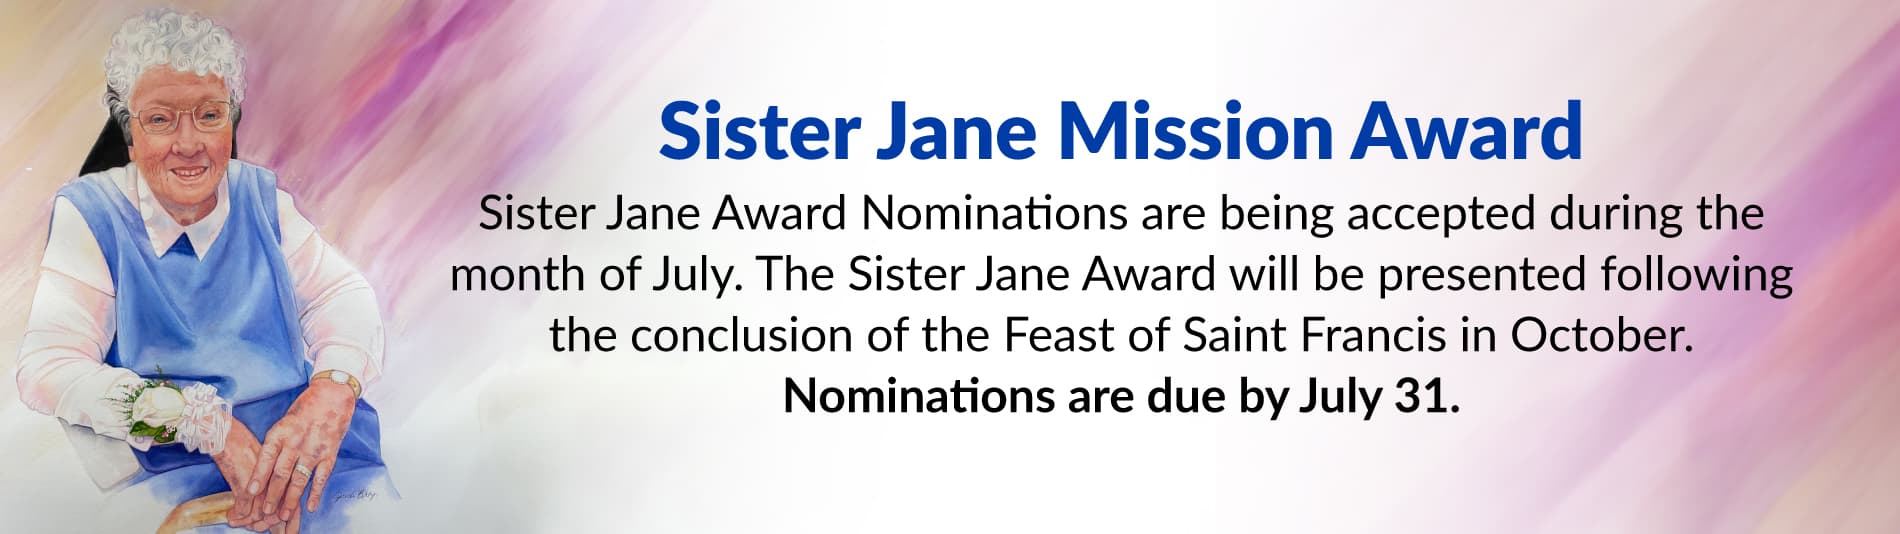 Sister Jane Mission Award